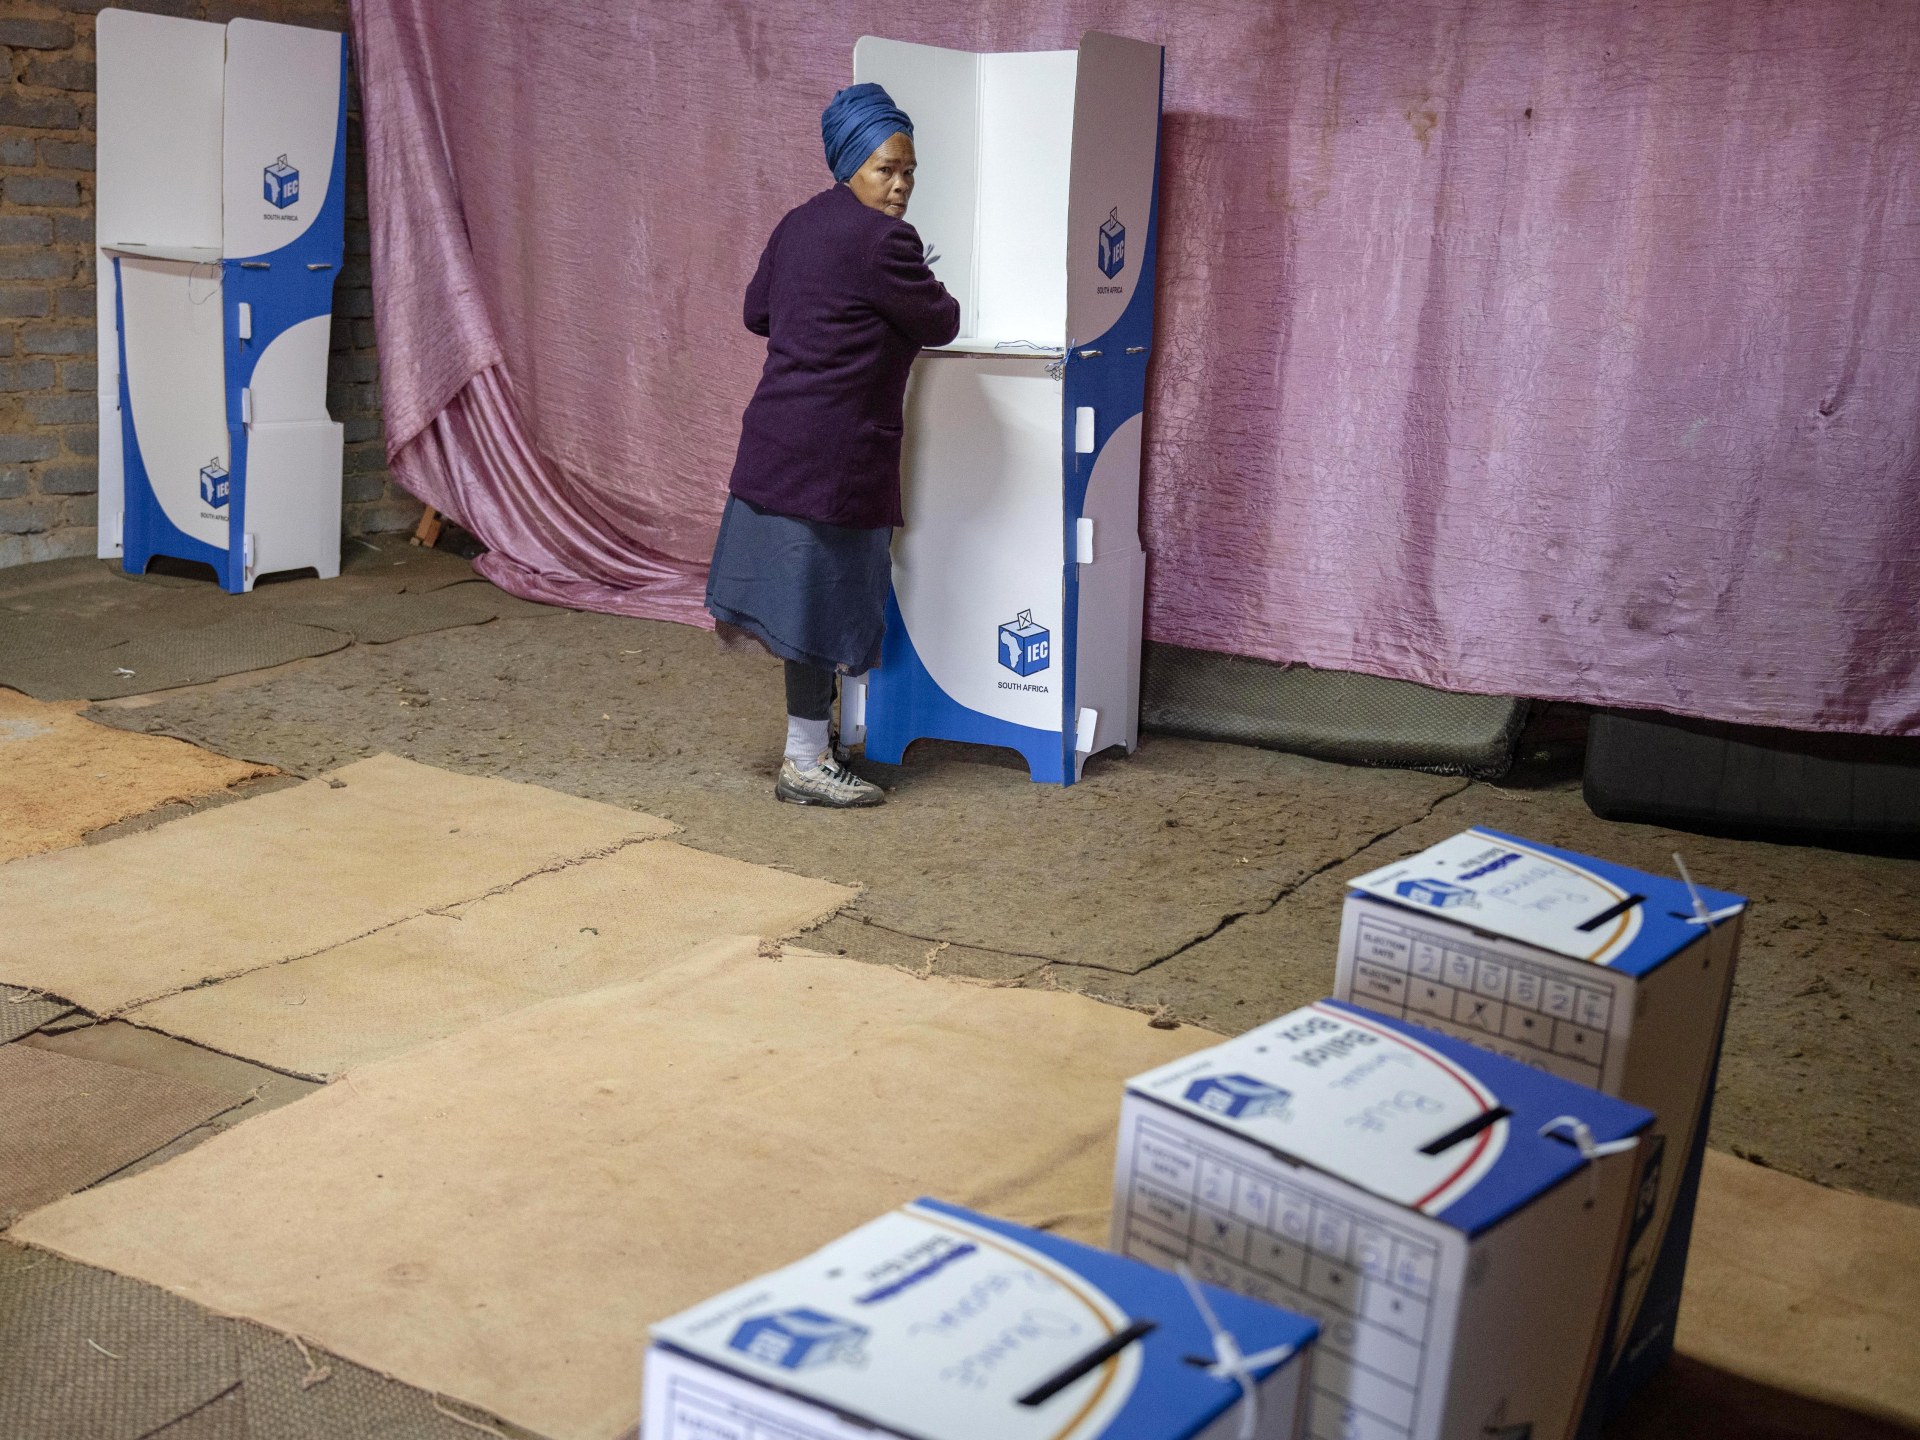 تراجع للحزب الحاكم بجنوب أفريقيا في النتائج الجزئية للانتخابات | أخبار – البوكس نيوز